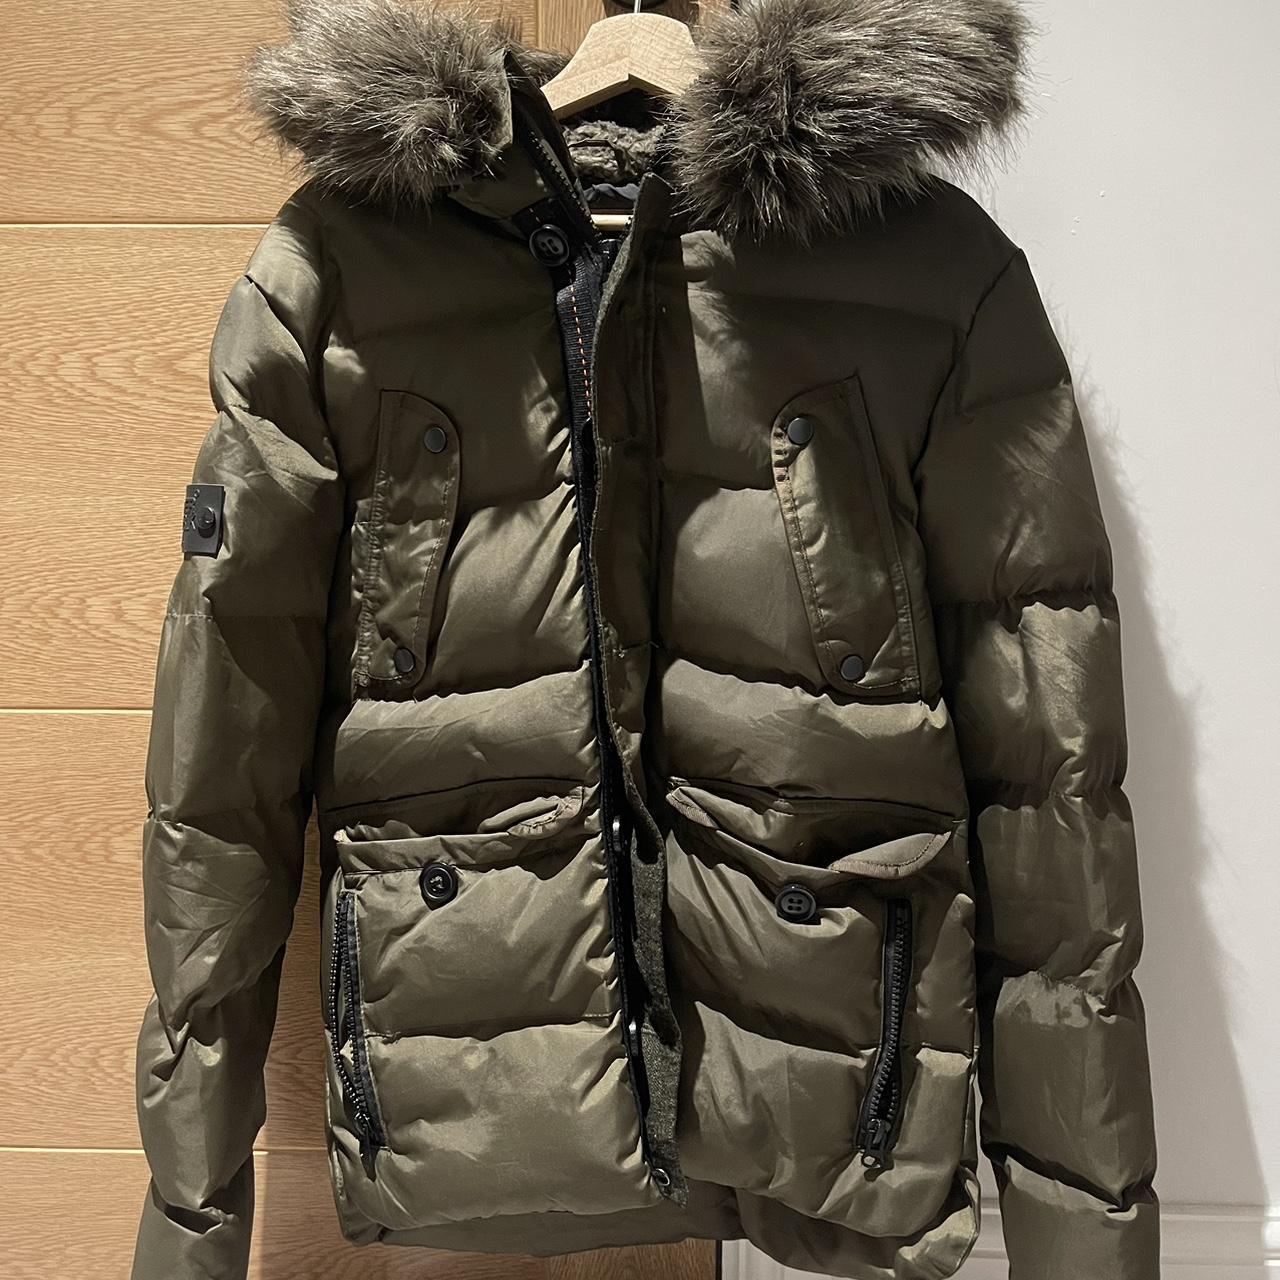 Superdry jacket coat parka Size:... - Depop